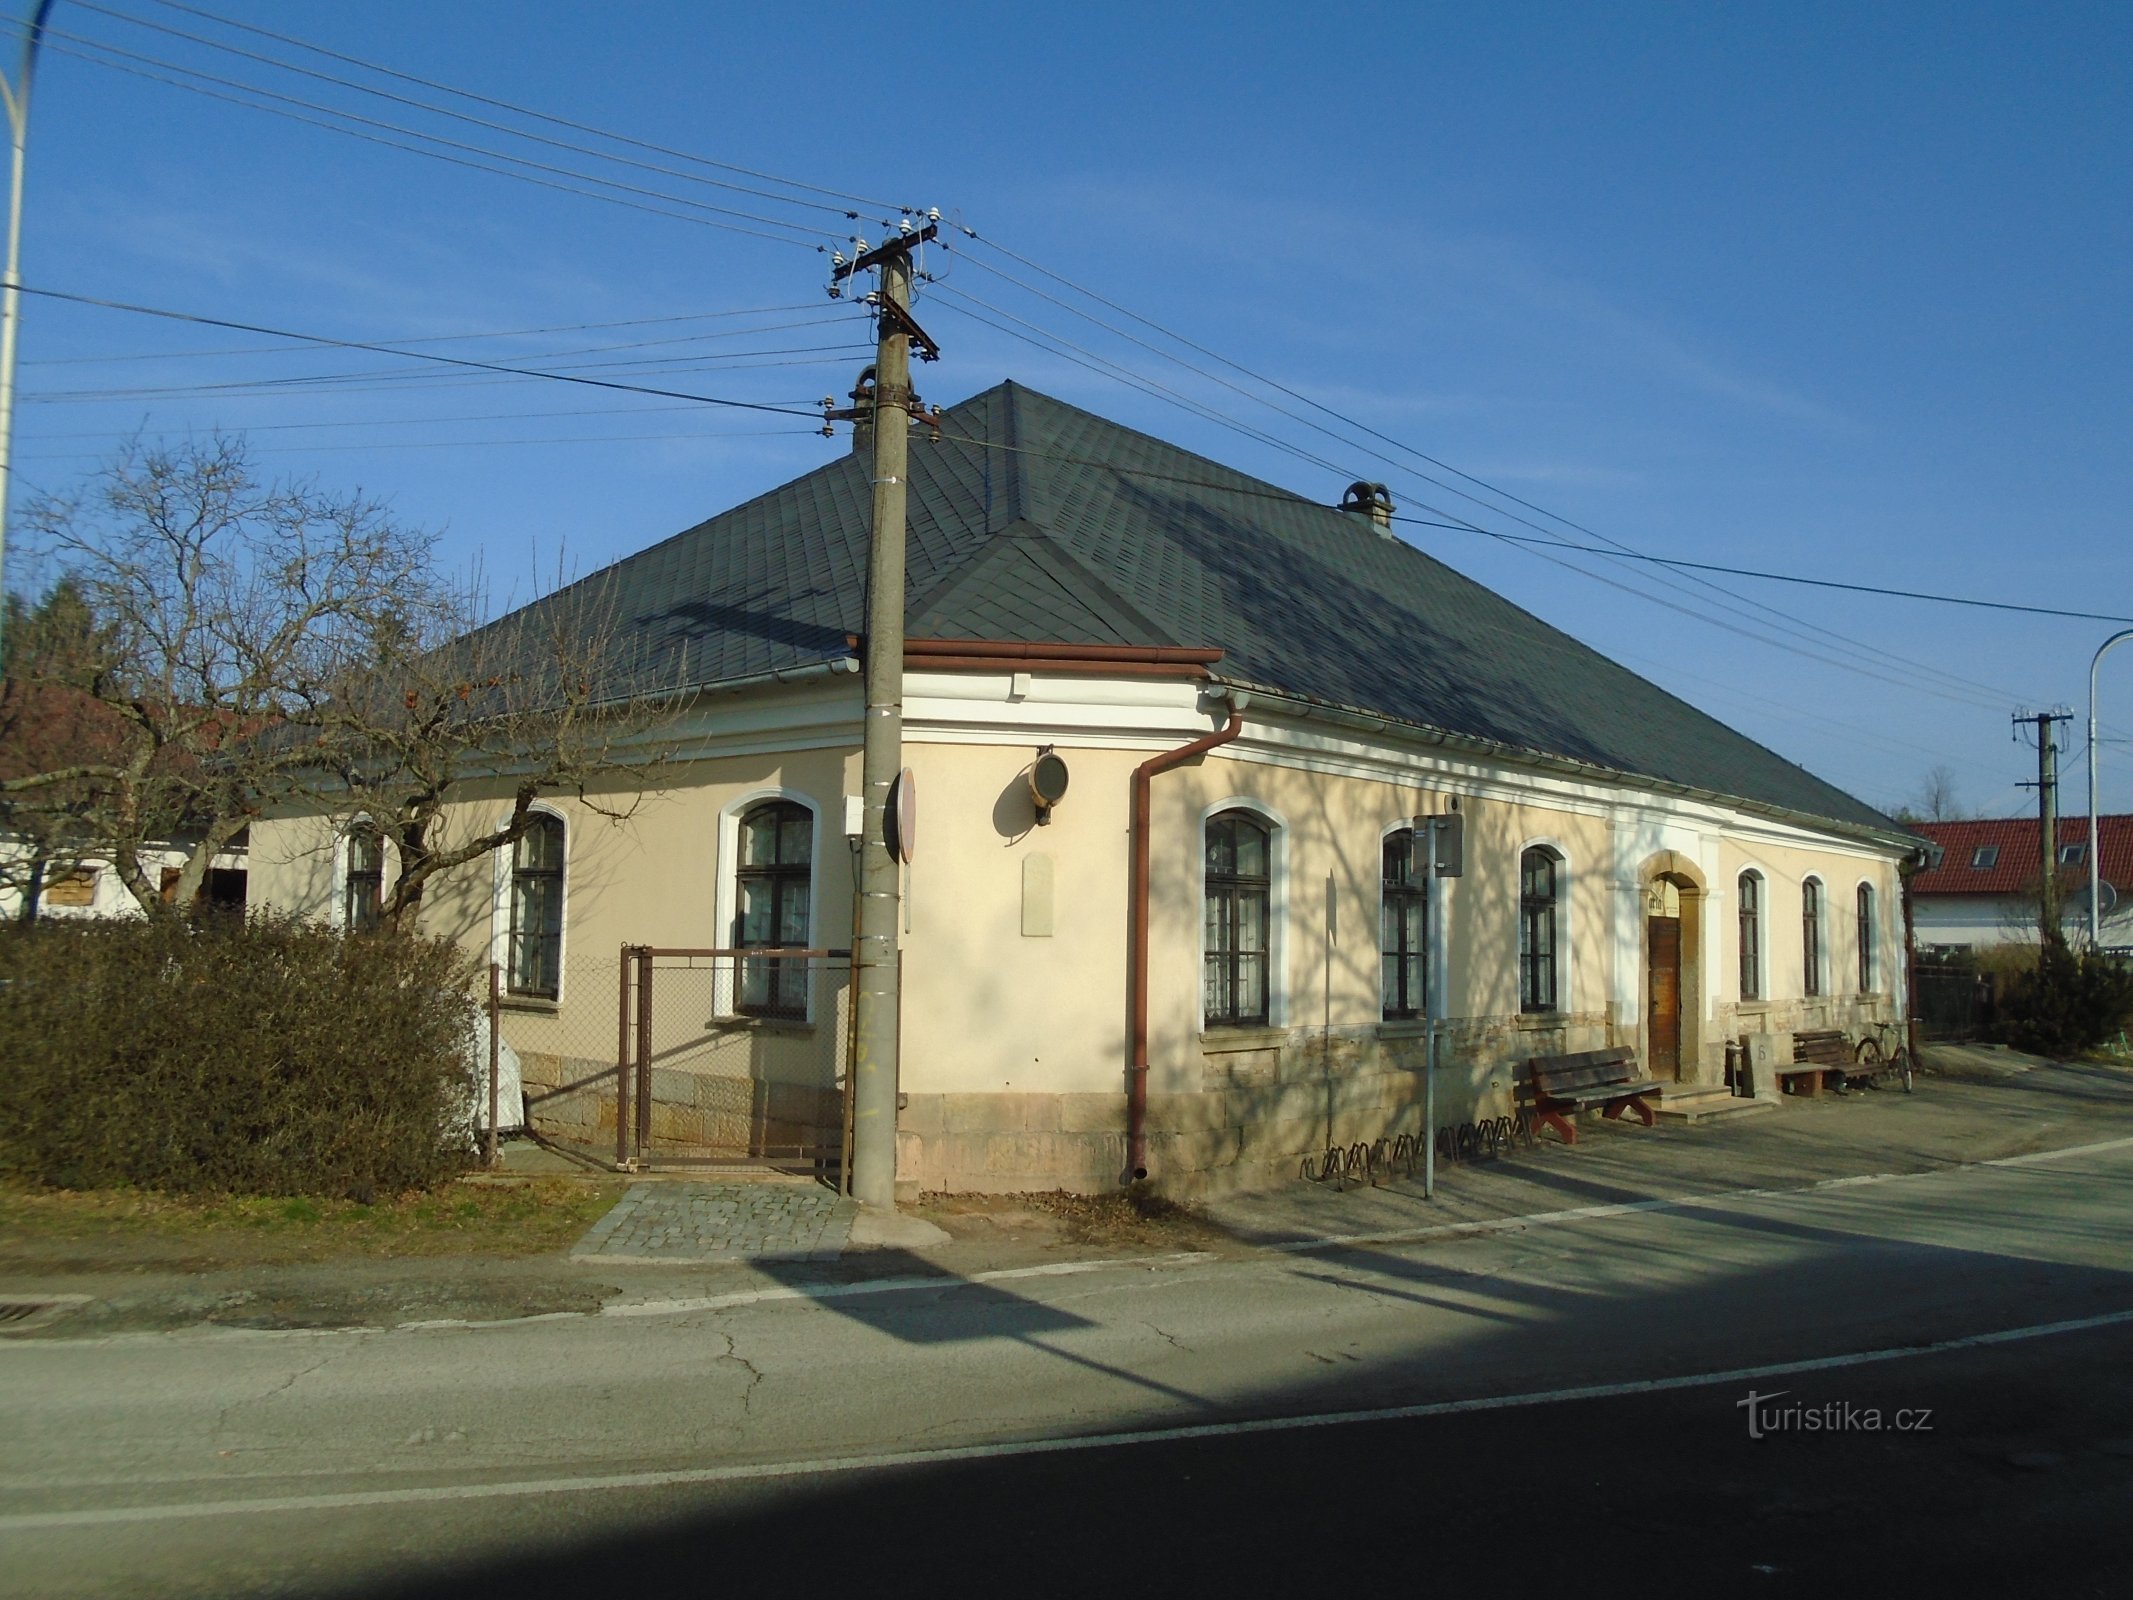 Podhůrská nr. 76 (Hradec Králové, 23.1.2019. januar XNUMX)